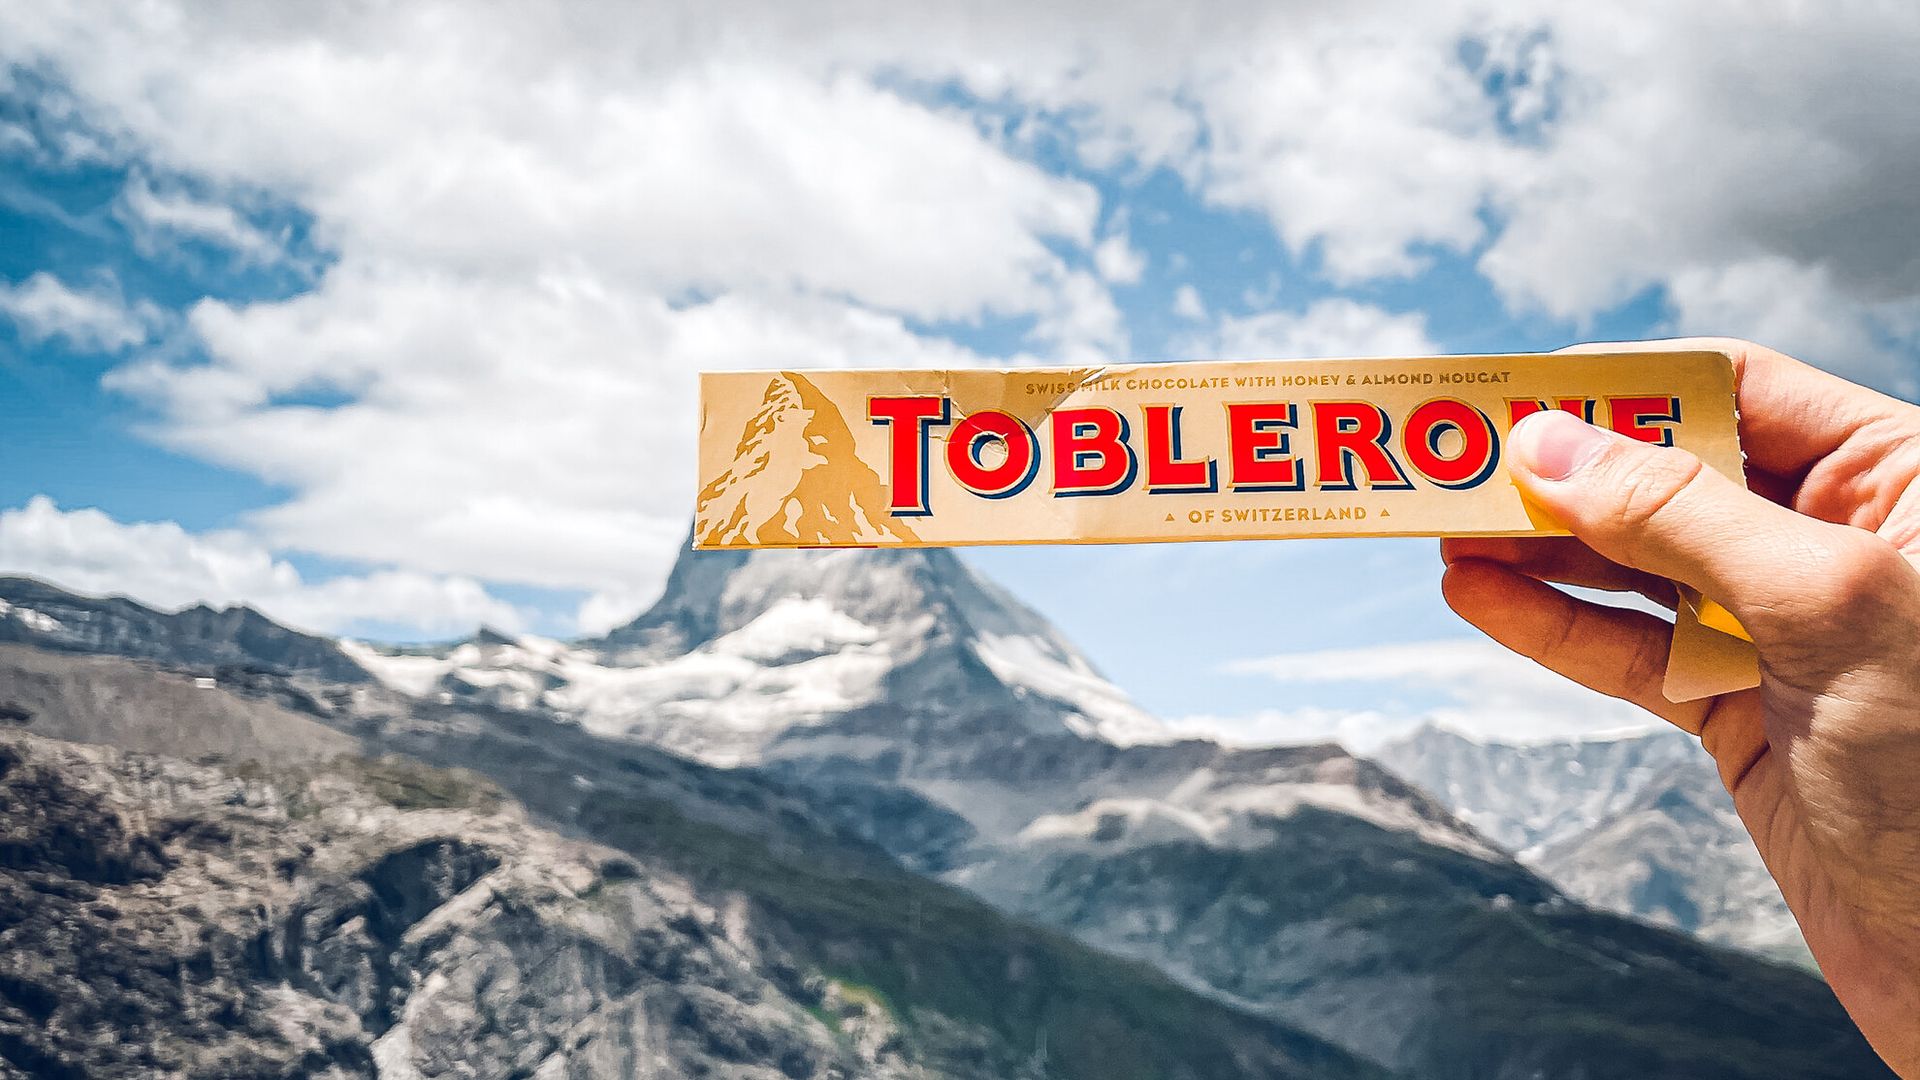 Toblerone Verpackung Foto mit dem Matterhorn am Gornergrat